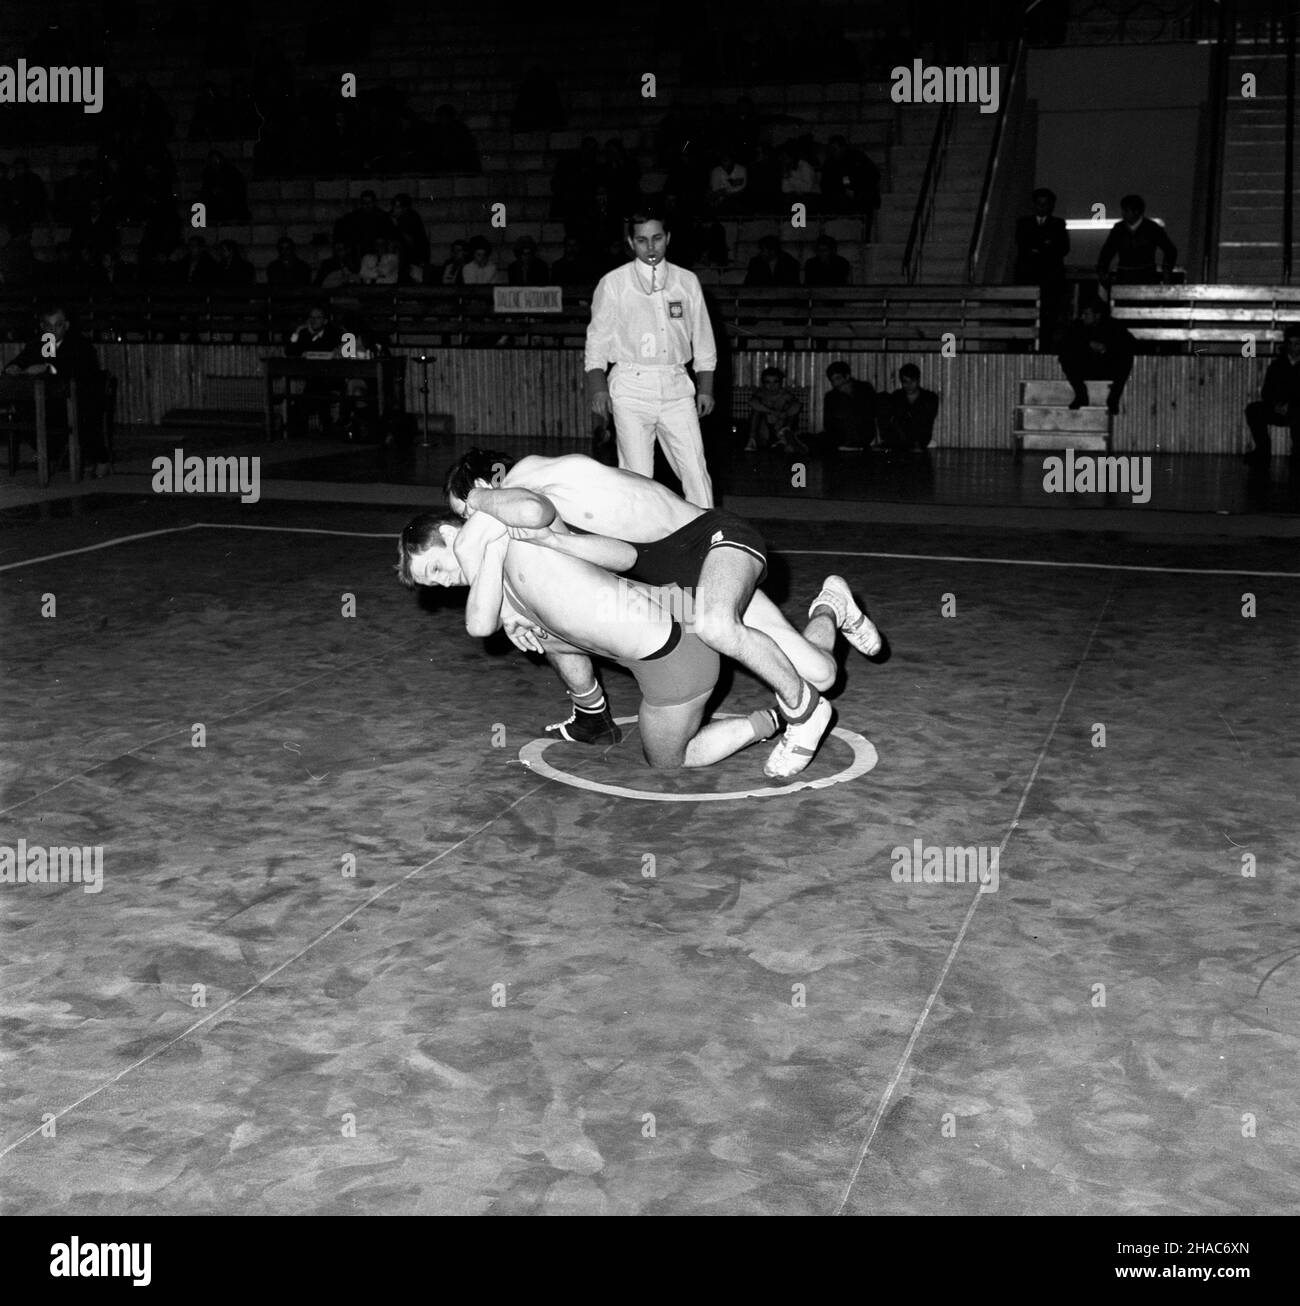 Katowice, 1969-12-06. XIV Miêdzynarodowy Turniej Zapaœniczy o memoria³ Paw³a Jasiñskiego odbywaj¹cy siê w dniach 6 - 7 grudnia 1969 r. w hali sportowej huty Baildom. Nz. Jurgen Penquitt z NRD  i Pawe³ Tic z Banik Ostrava. mb  PAP/Kazimierz Seko      Katowice, Dec. 6, 1969. The 14th International Wrestling Tournament for the Pawel Jasinski Memorial held at the Baildon steel-works sports hall in December 6 and 7, 1969. Pictured:  Jurgen Penquitt from GDR and Pawel Tic from Banik Ostrava.  mb  PAP/Kazimierz Seko Stock Photo